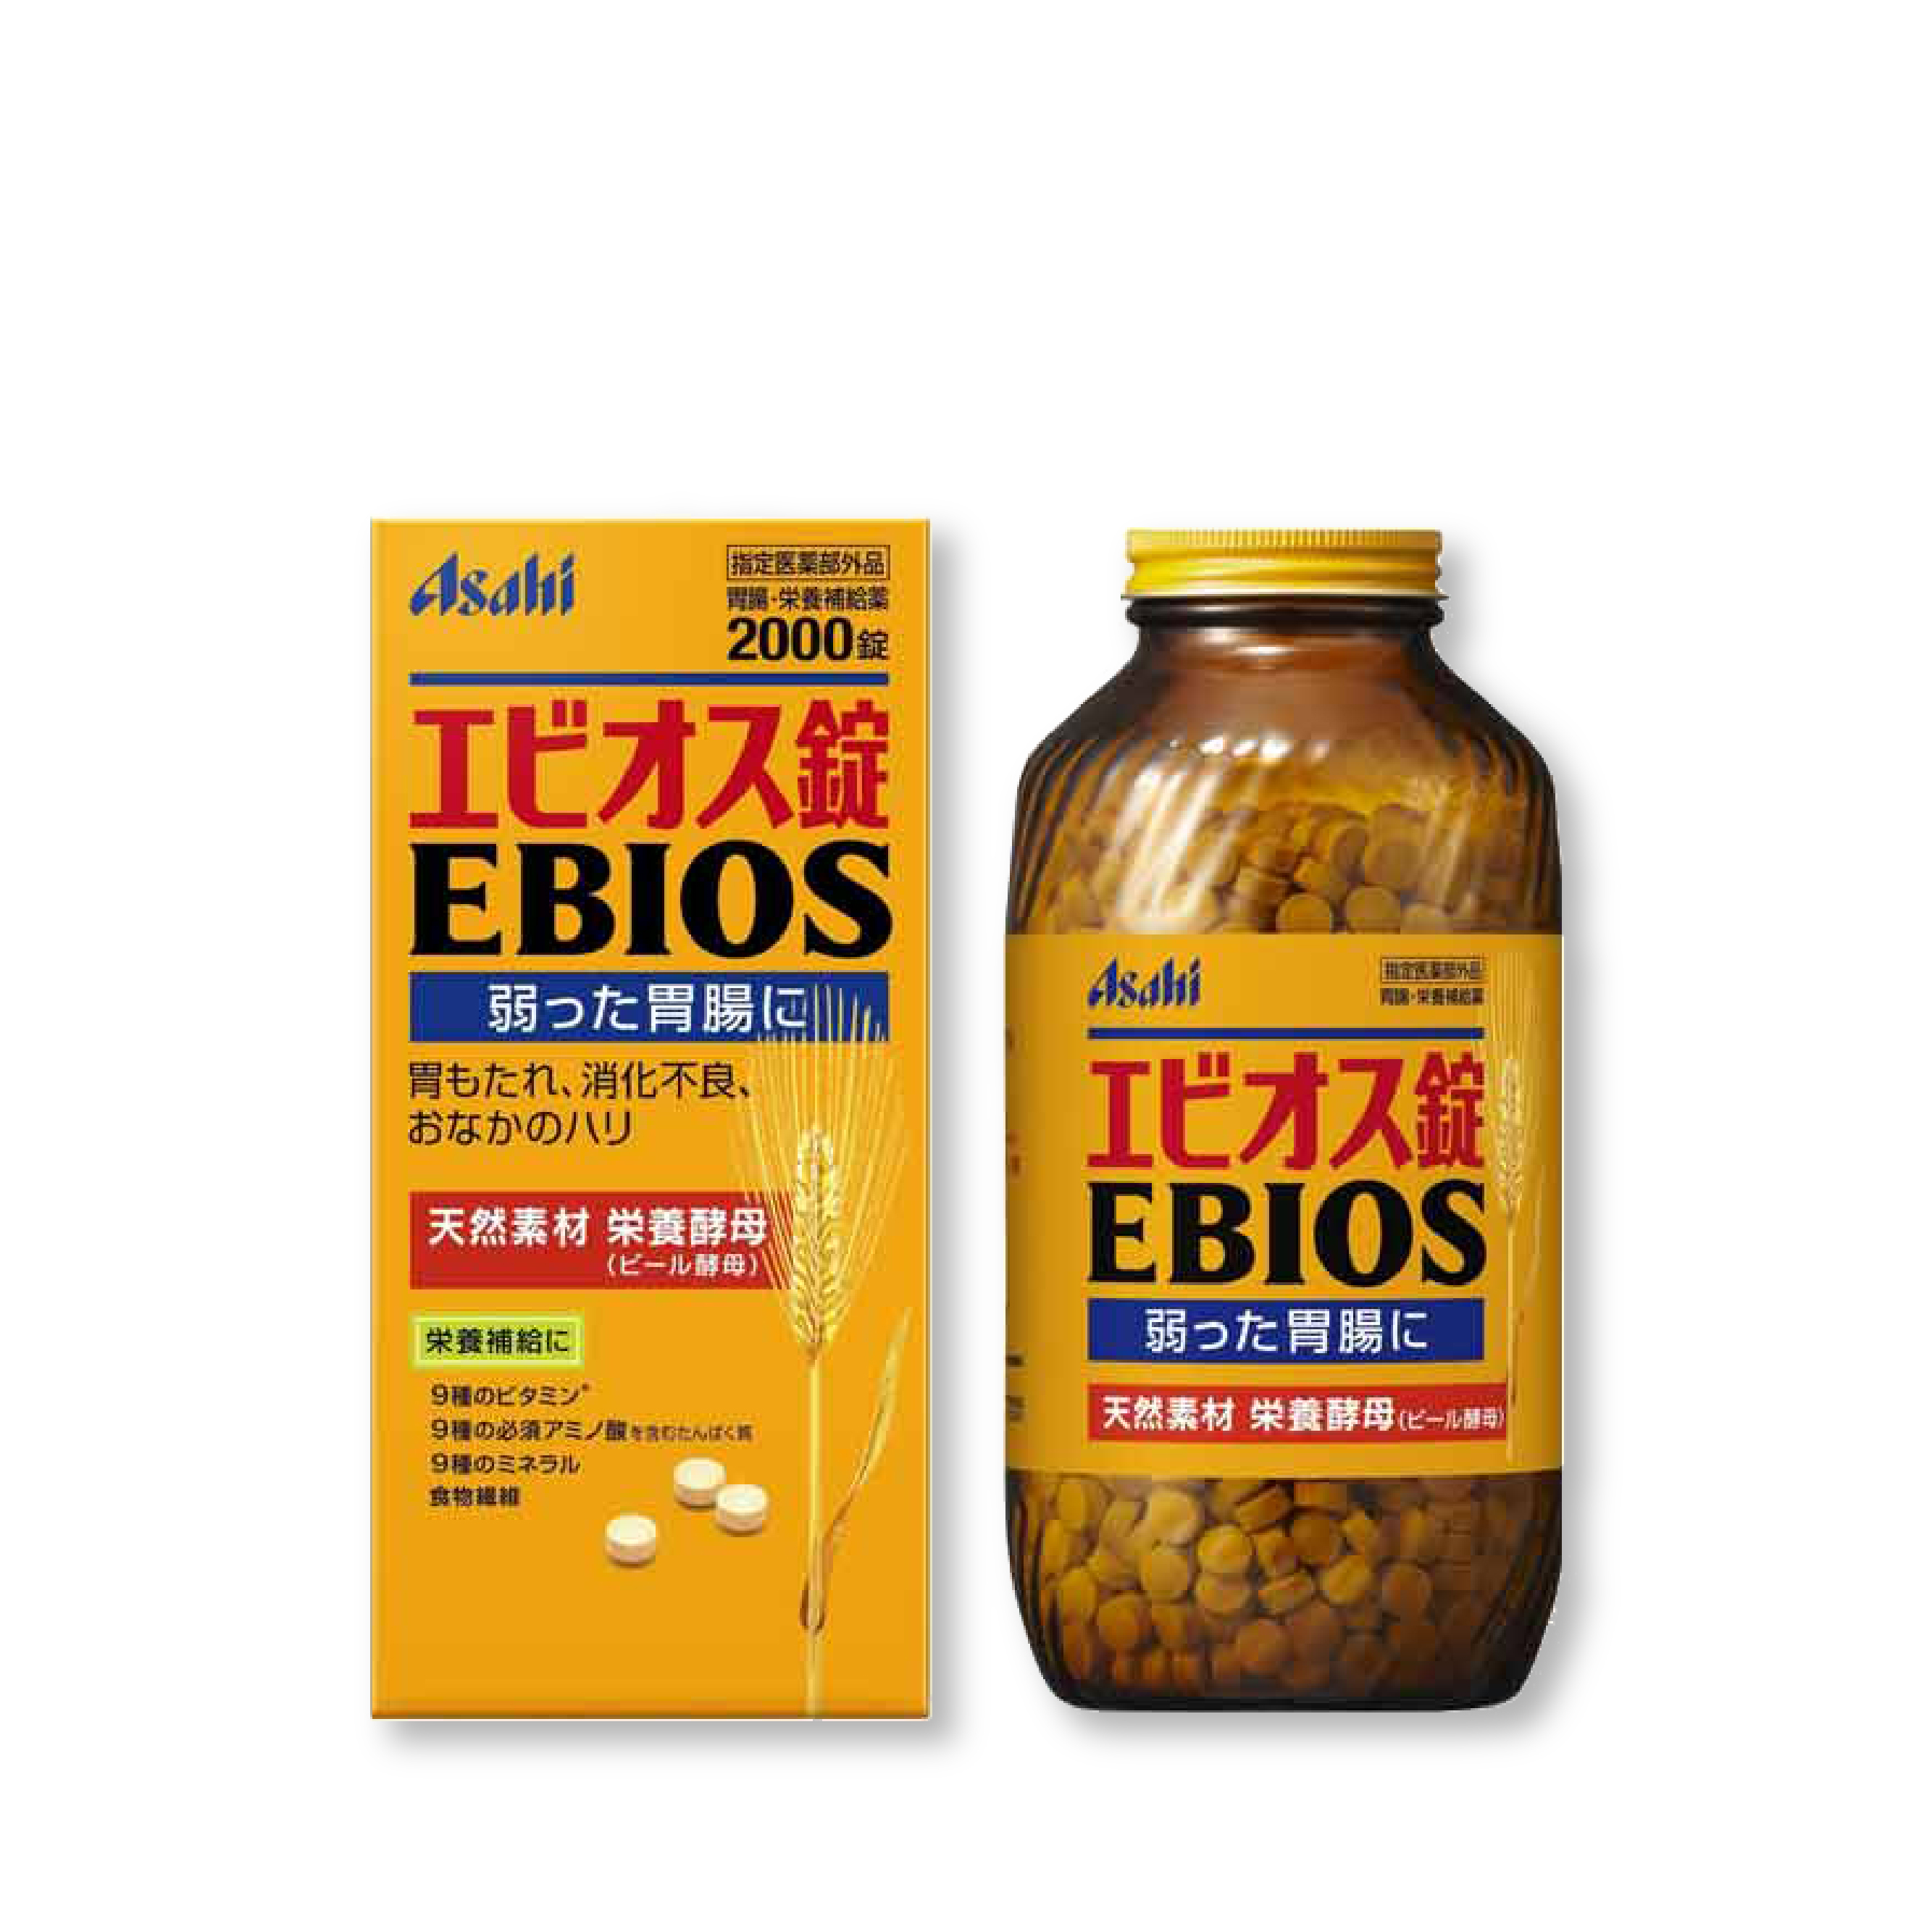 에비오스 2000정, 위장약 약해진 위장 건강식품